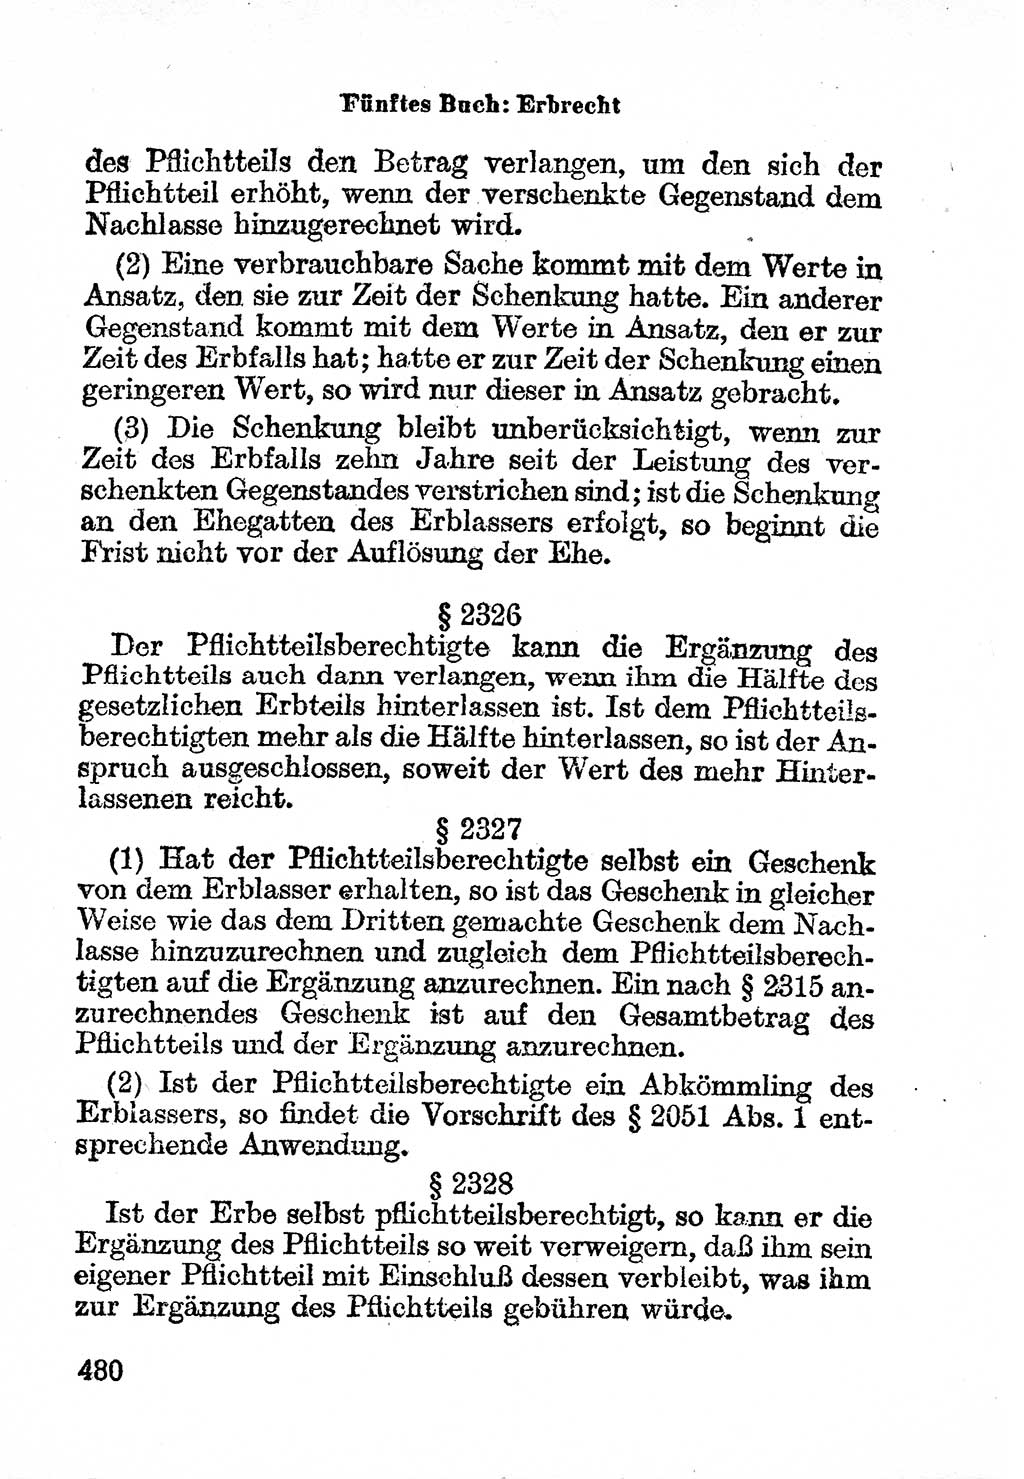 Bürgerliches Gesetzbuch (BGB) nebst wichtigen Nebengesetzen [Deutsche Demokratische Republik (DDR)] 1956, Seite 480 (BGB Nebenges. DDR 1956, S. 480)